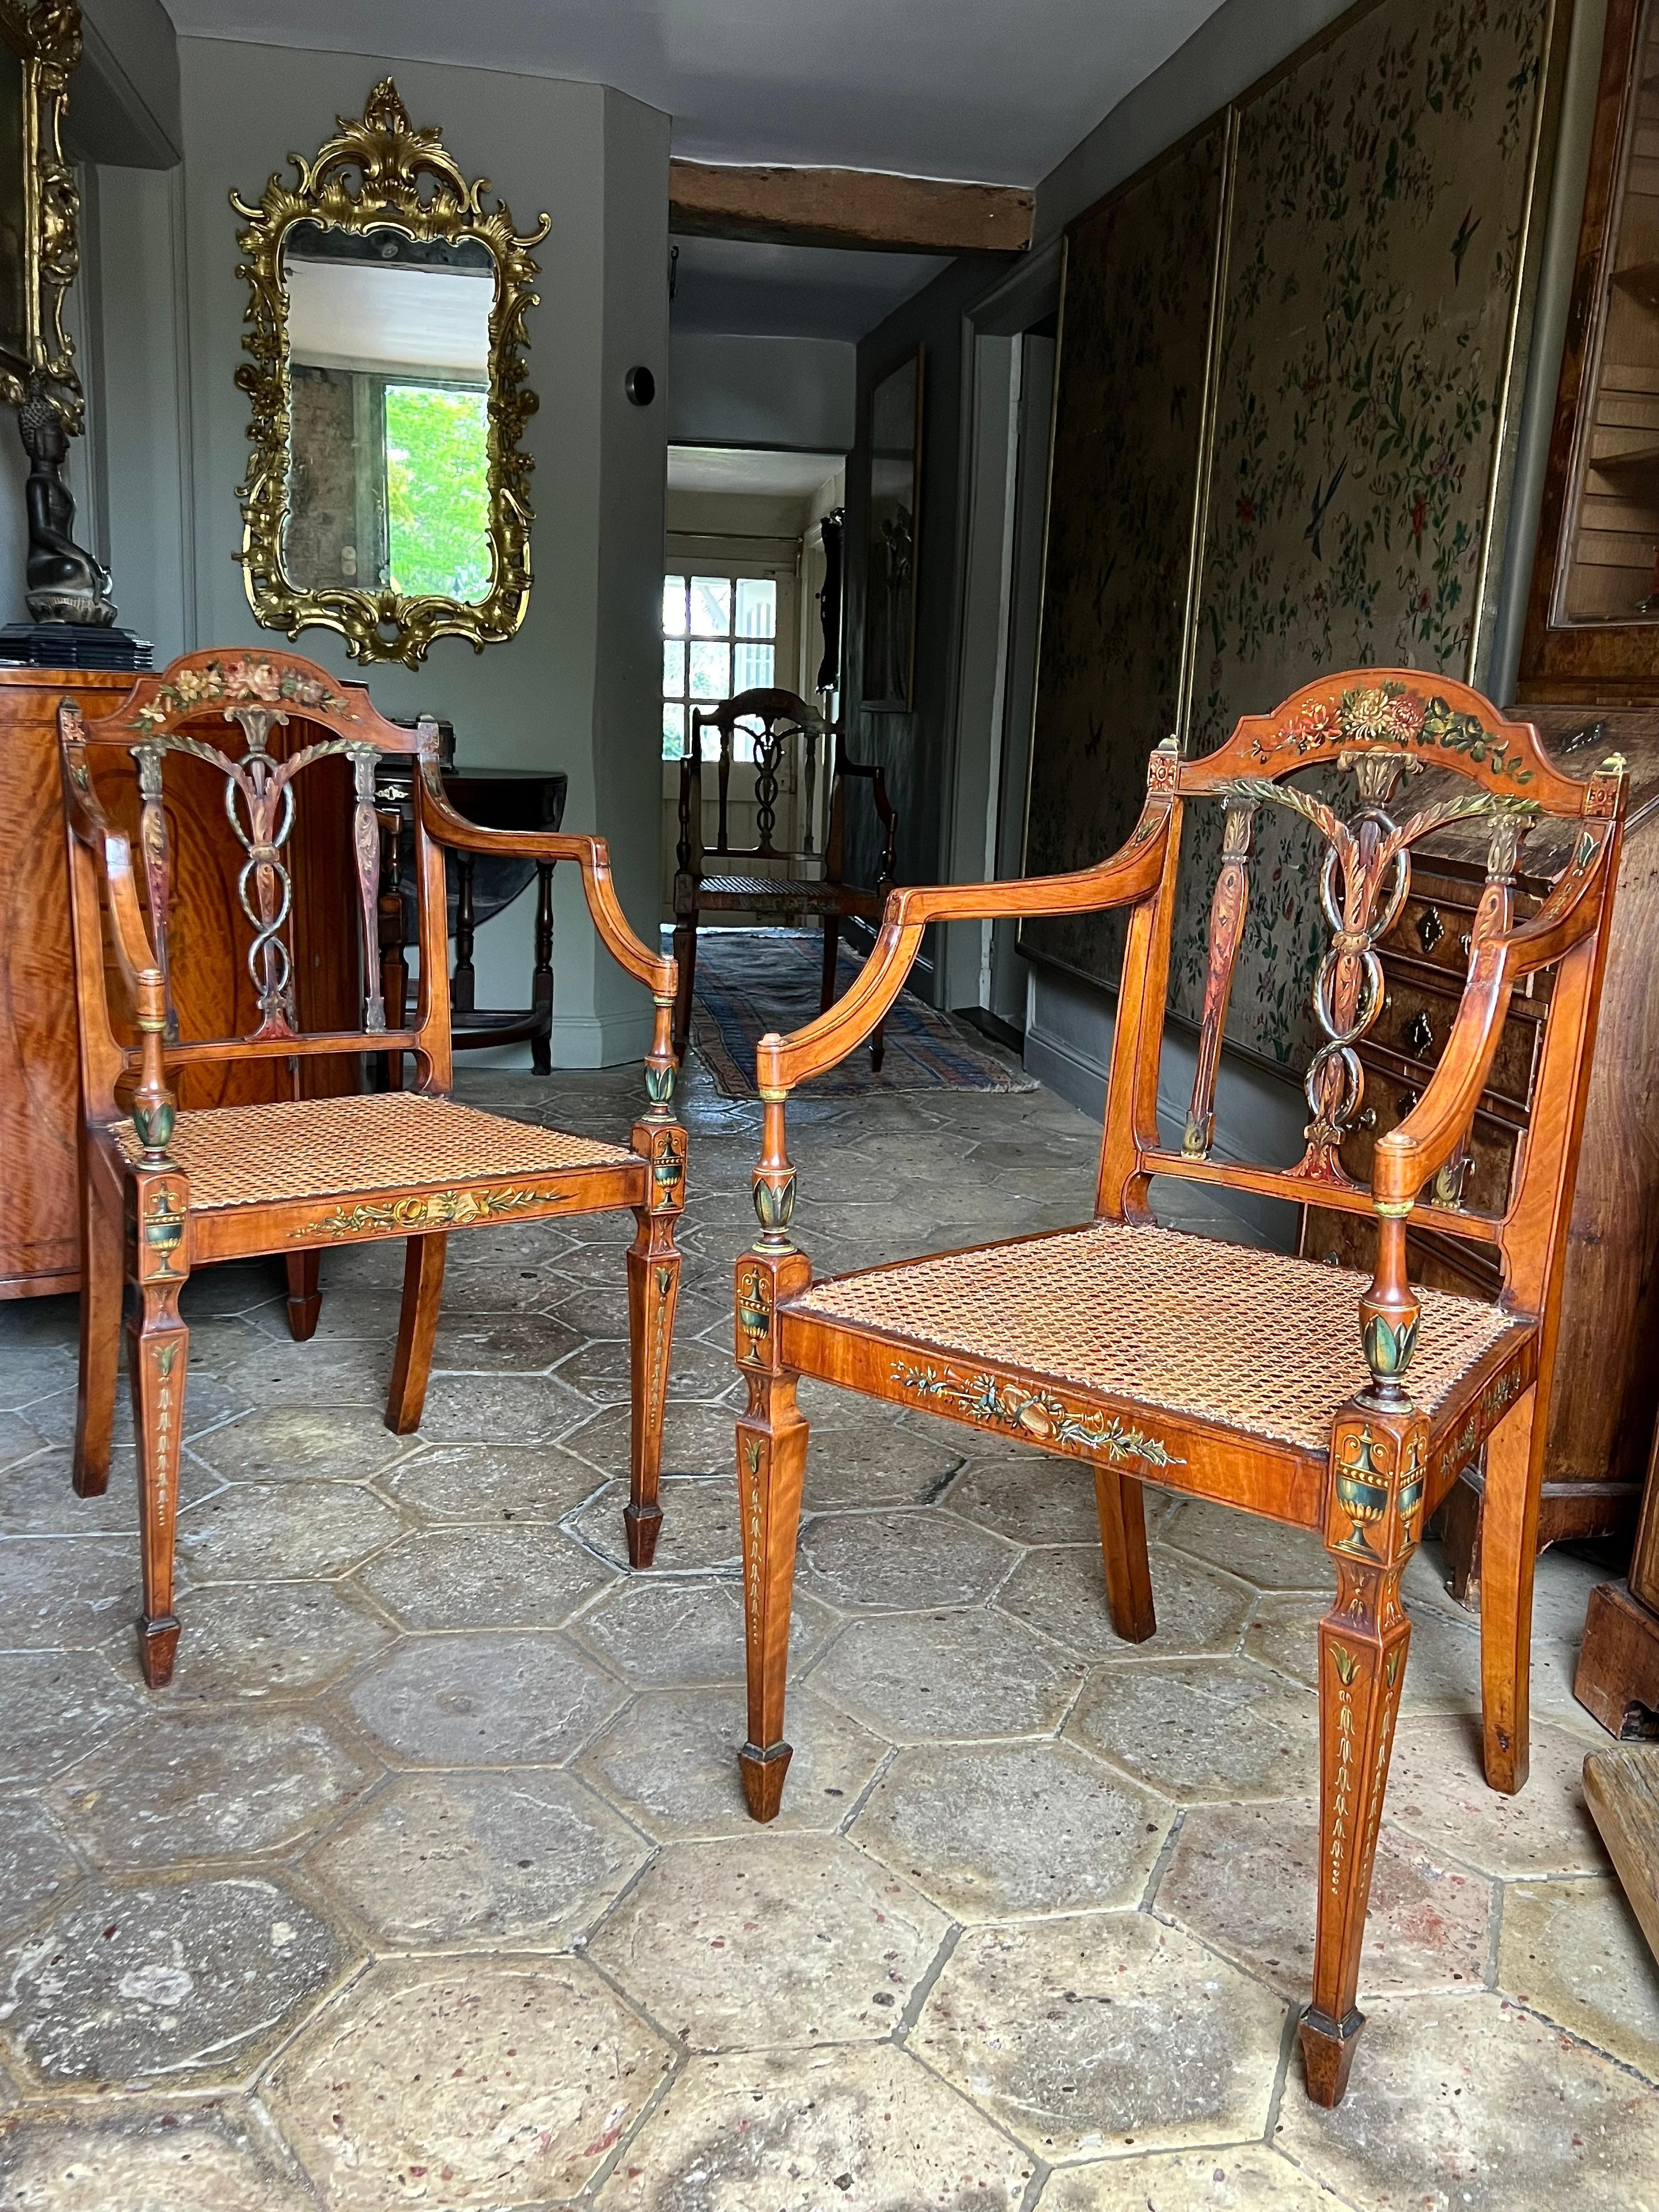 Un bel et très rare ensemble de quatre fauteuils anglais de la fin du XVIIIe siècle en bois satiné peint, attribués à Seddon, Sons & Shackleton, vers 1790.

Ils ont conservé leur magnifique décoration polychrome presque entièrement originale. Notez